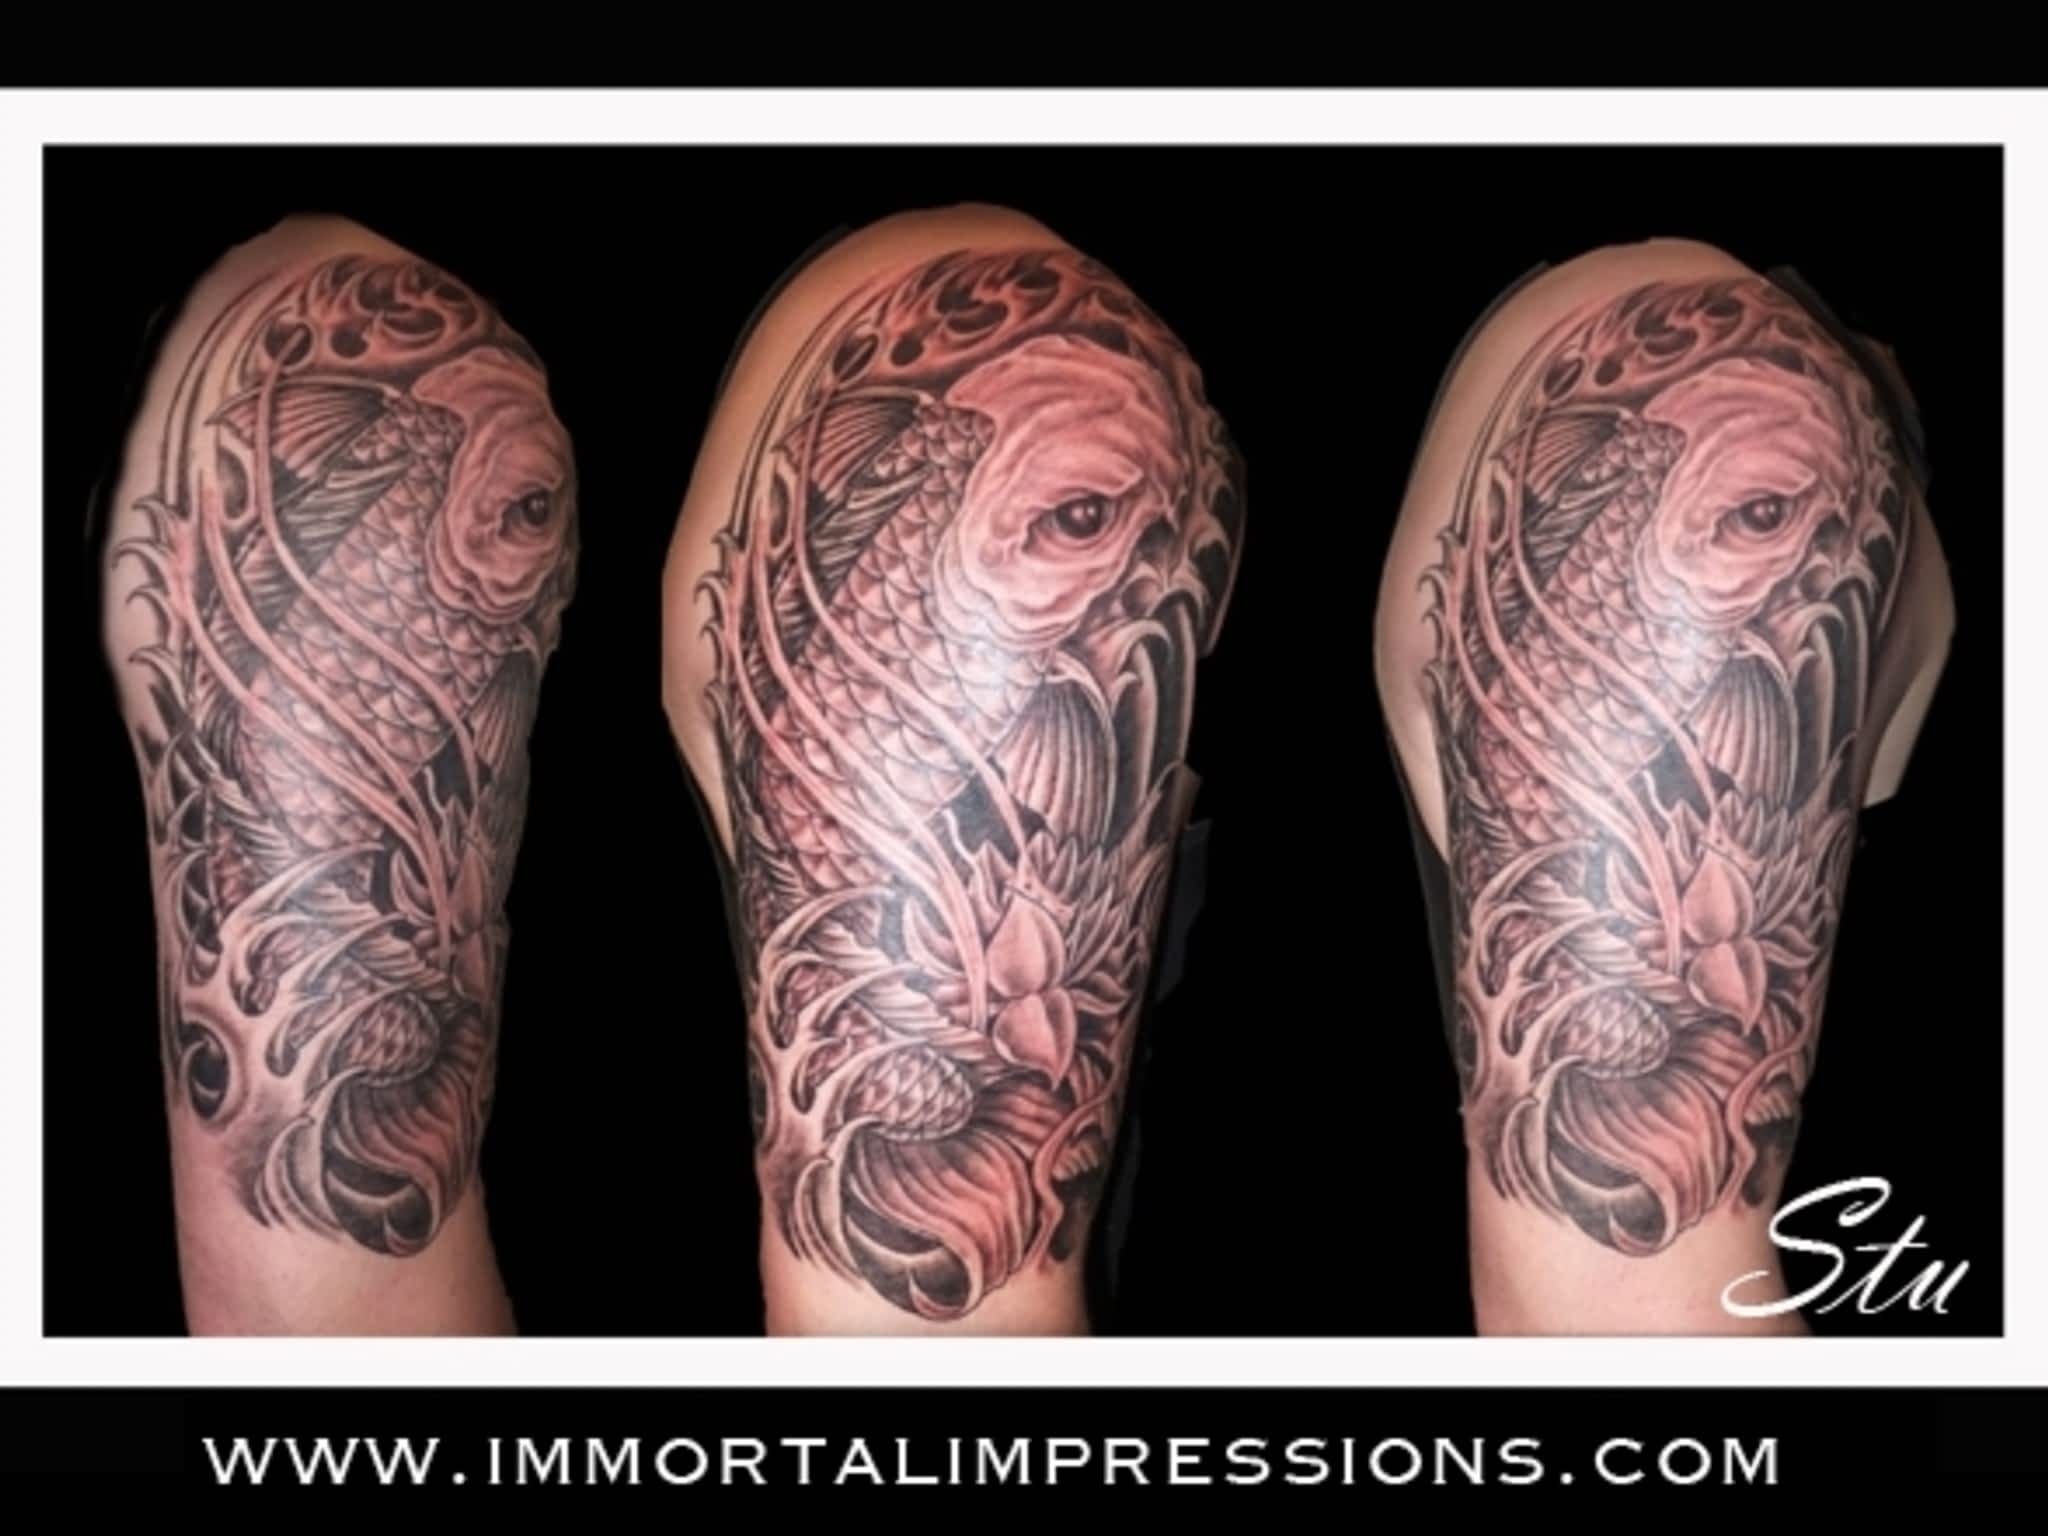 photo Immortal Impressions Tattoos